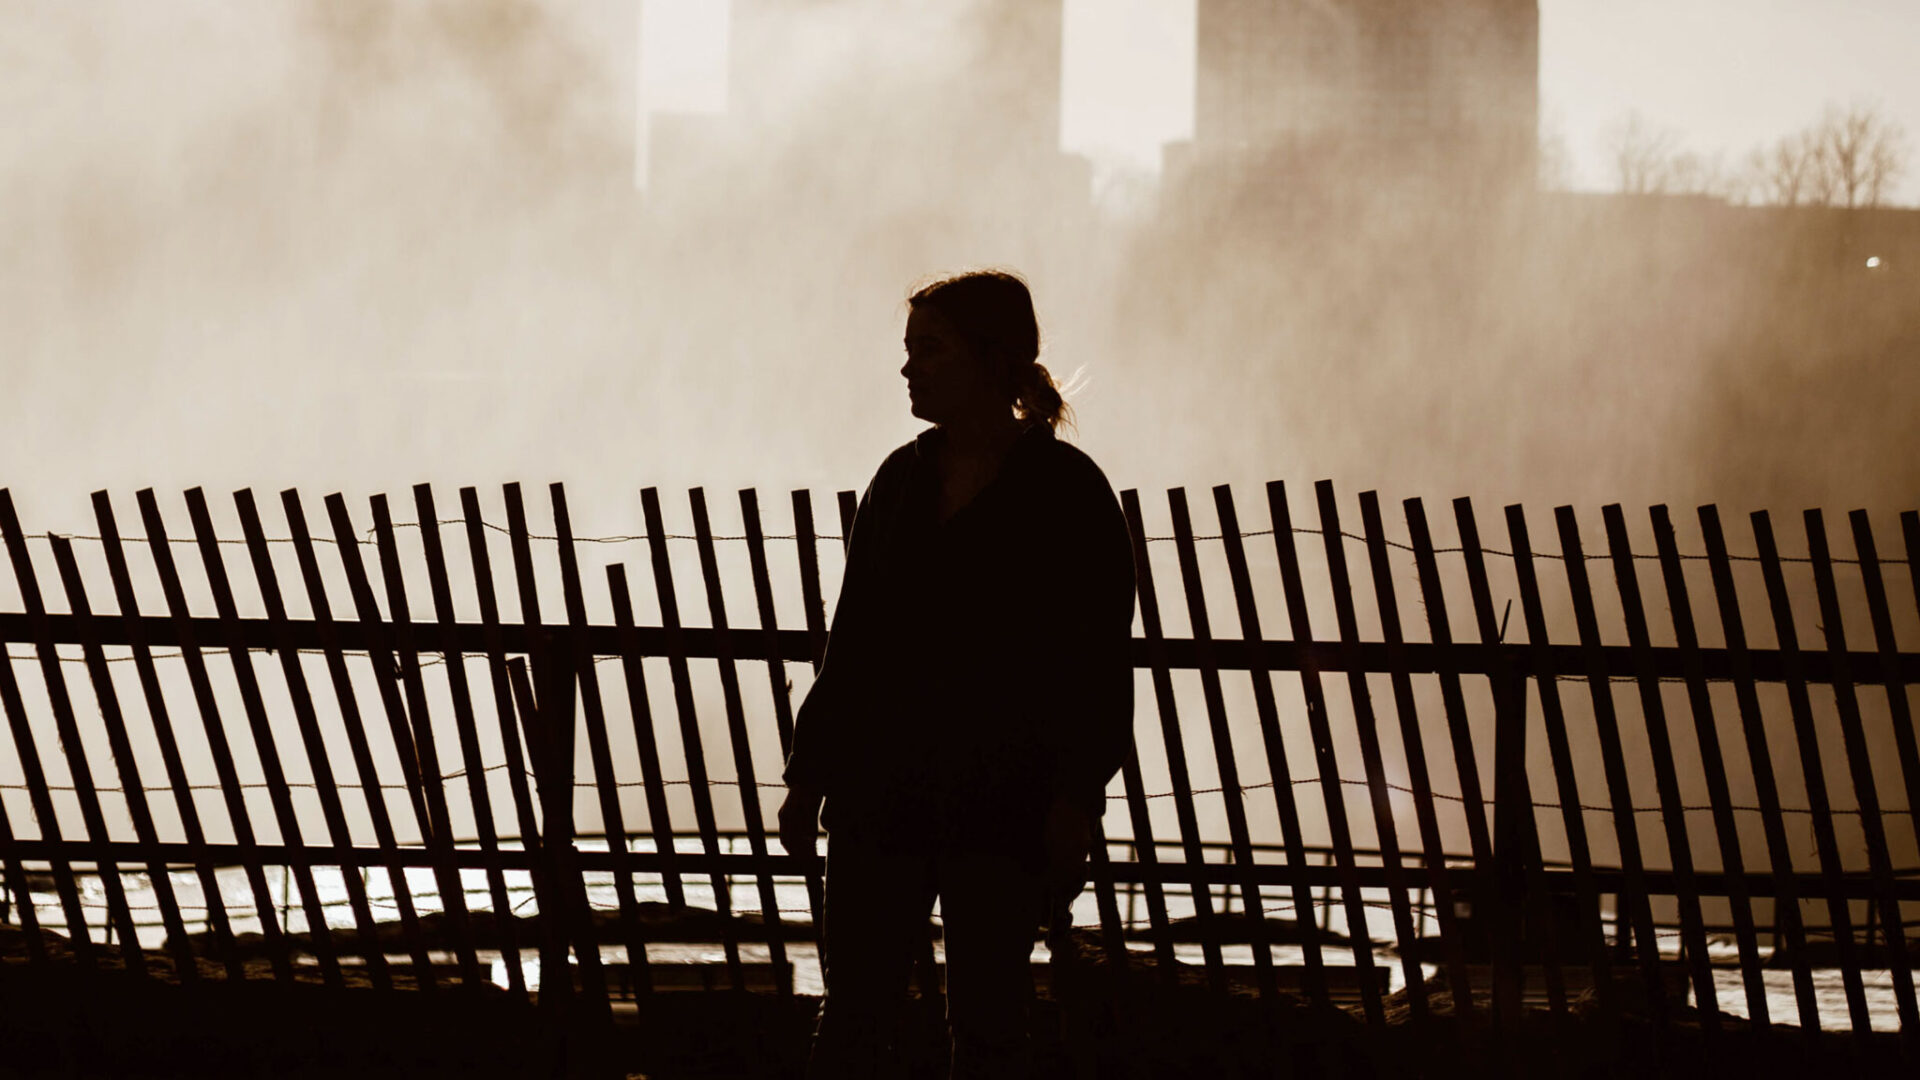 Woman walking along wooden fence